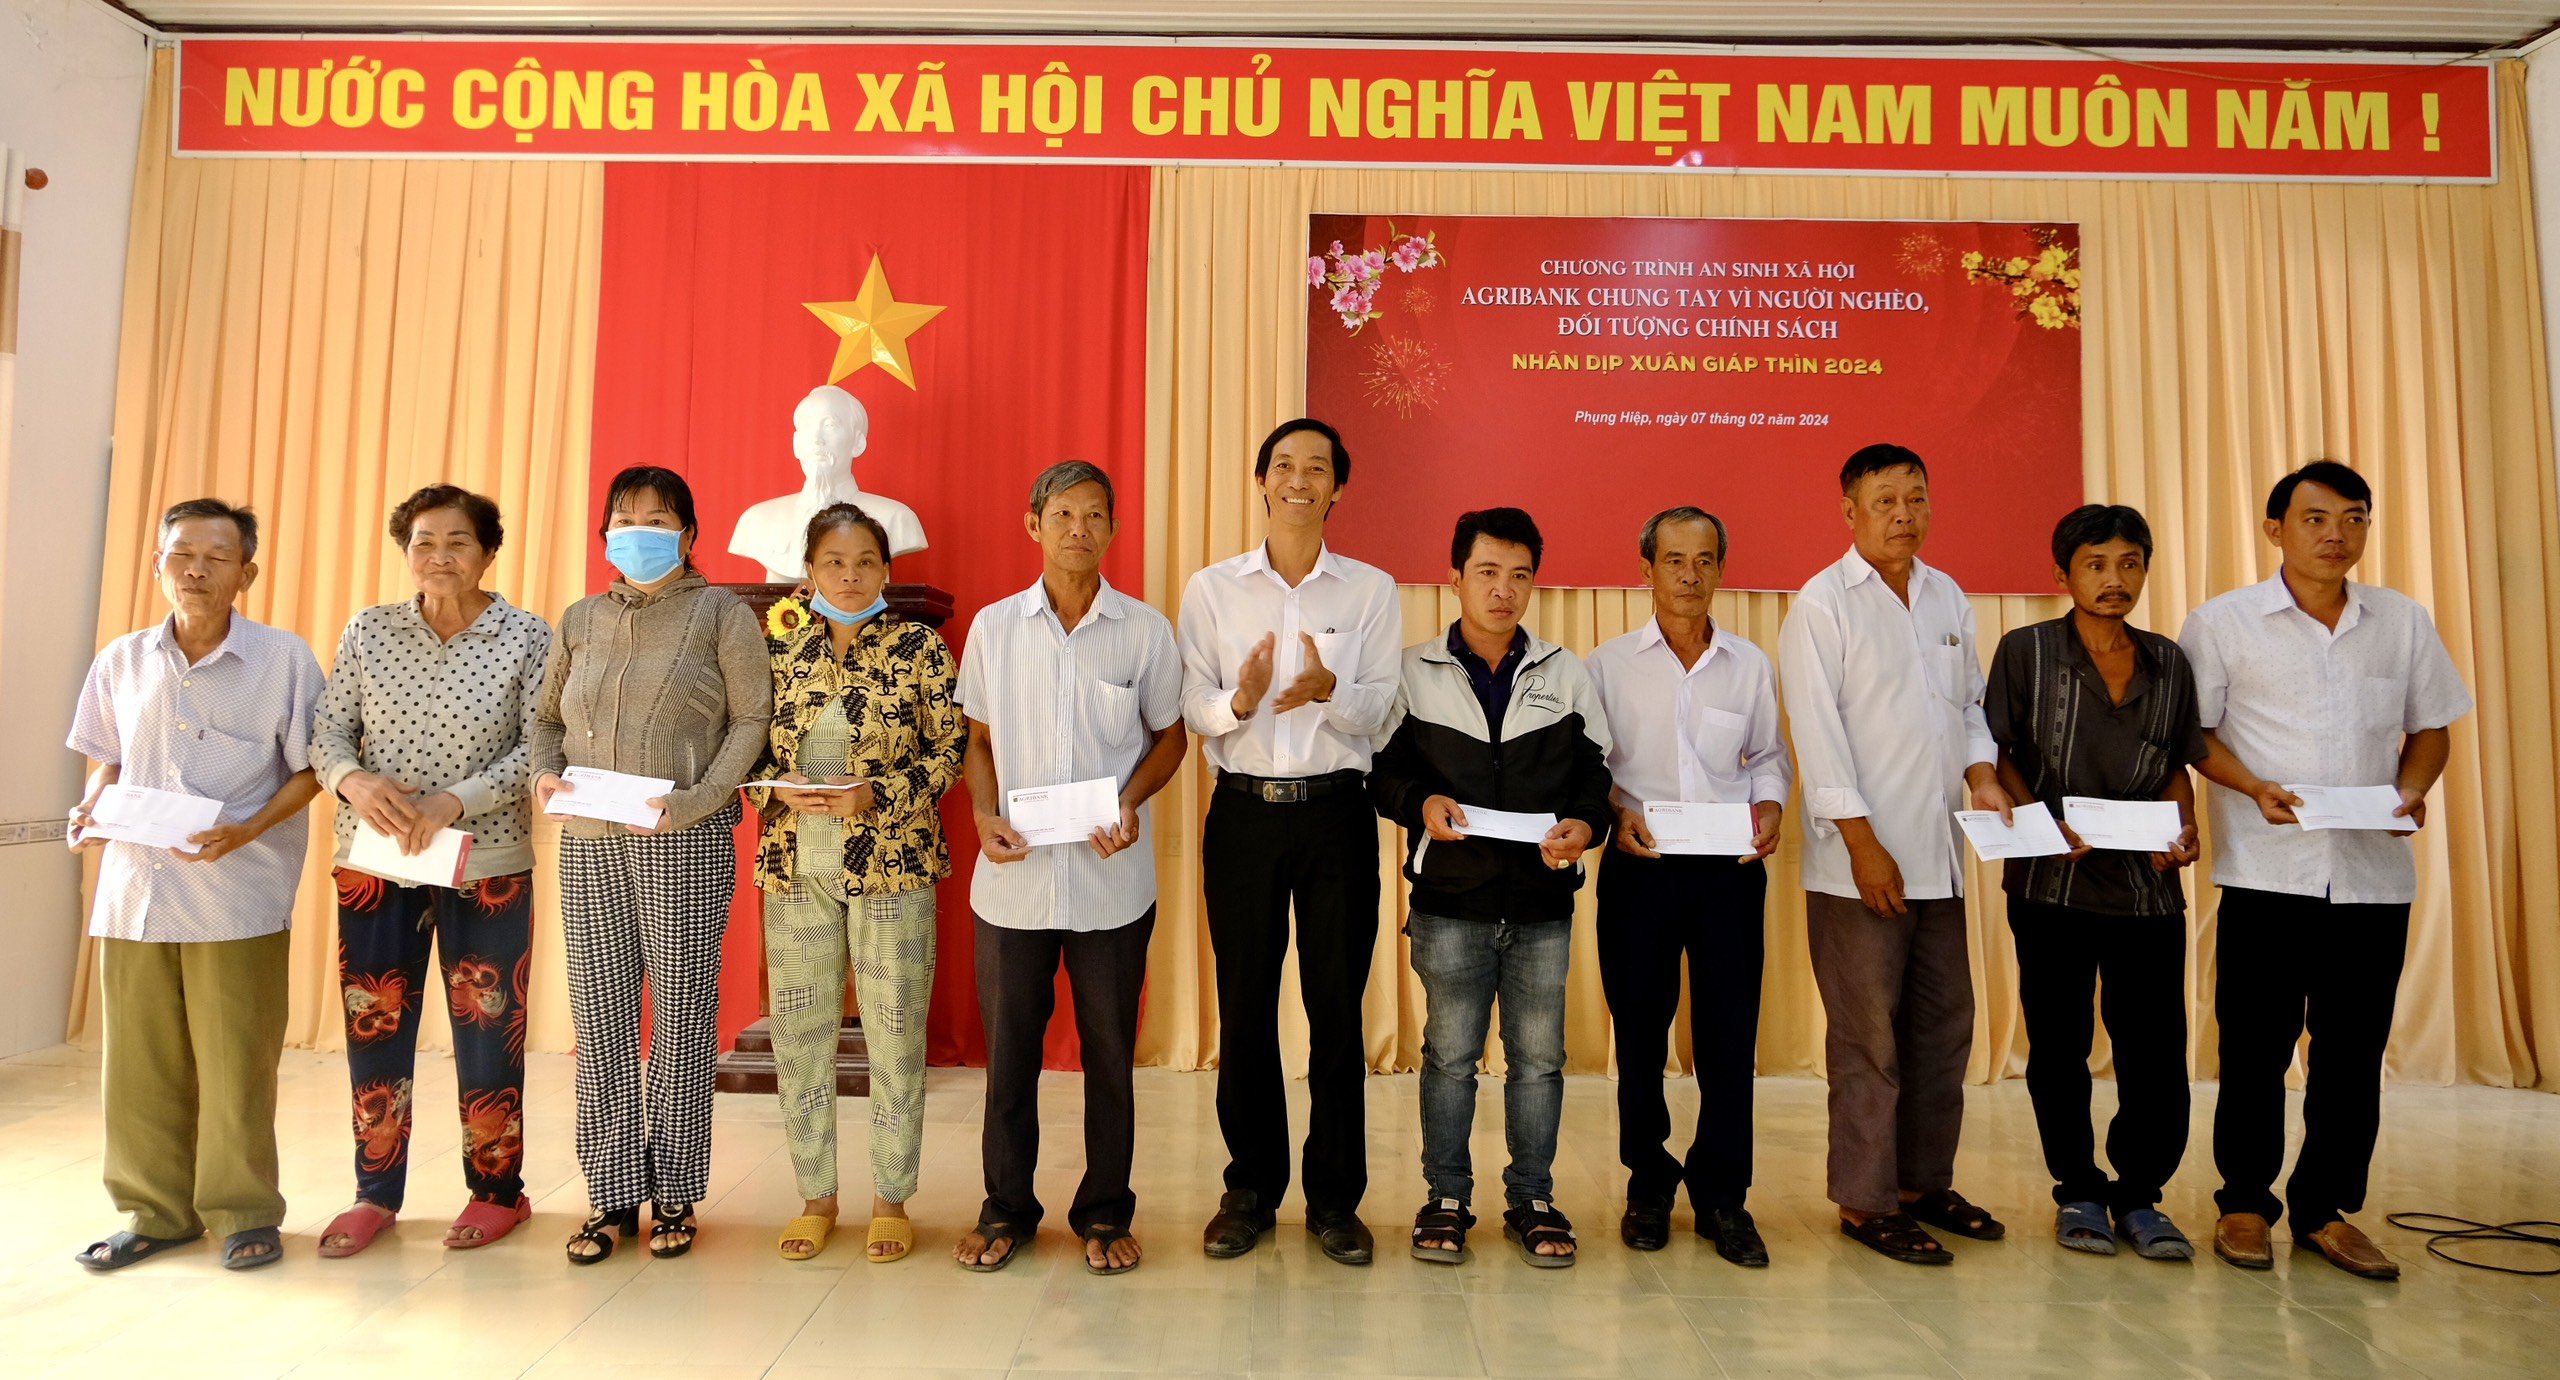 Agribank Chi nhánh tỉnh Hậu Giang chung tay vì người nghèo Xuân Giáp Thìn 2024- Ảnh 5.